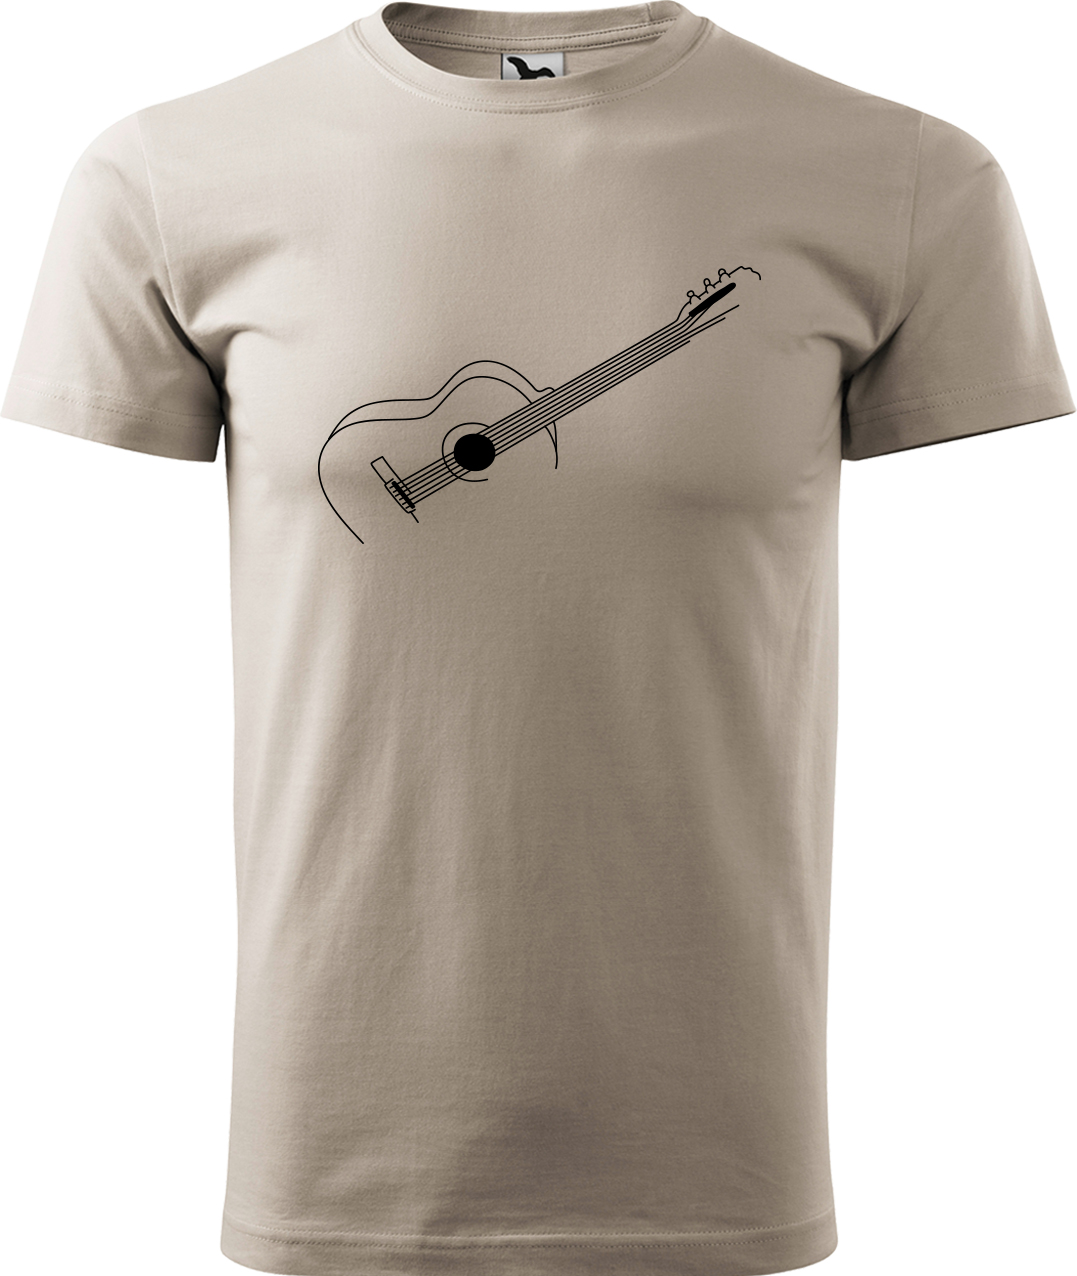 Pánské tričko s kytarou - Stylizovaná kytara Velikost: M, Barva: Ledově šedá (51), Střih: pánský